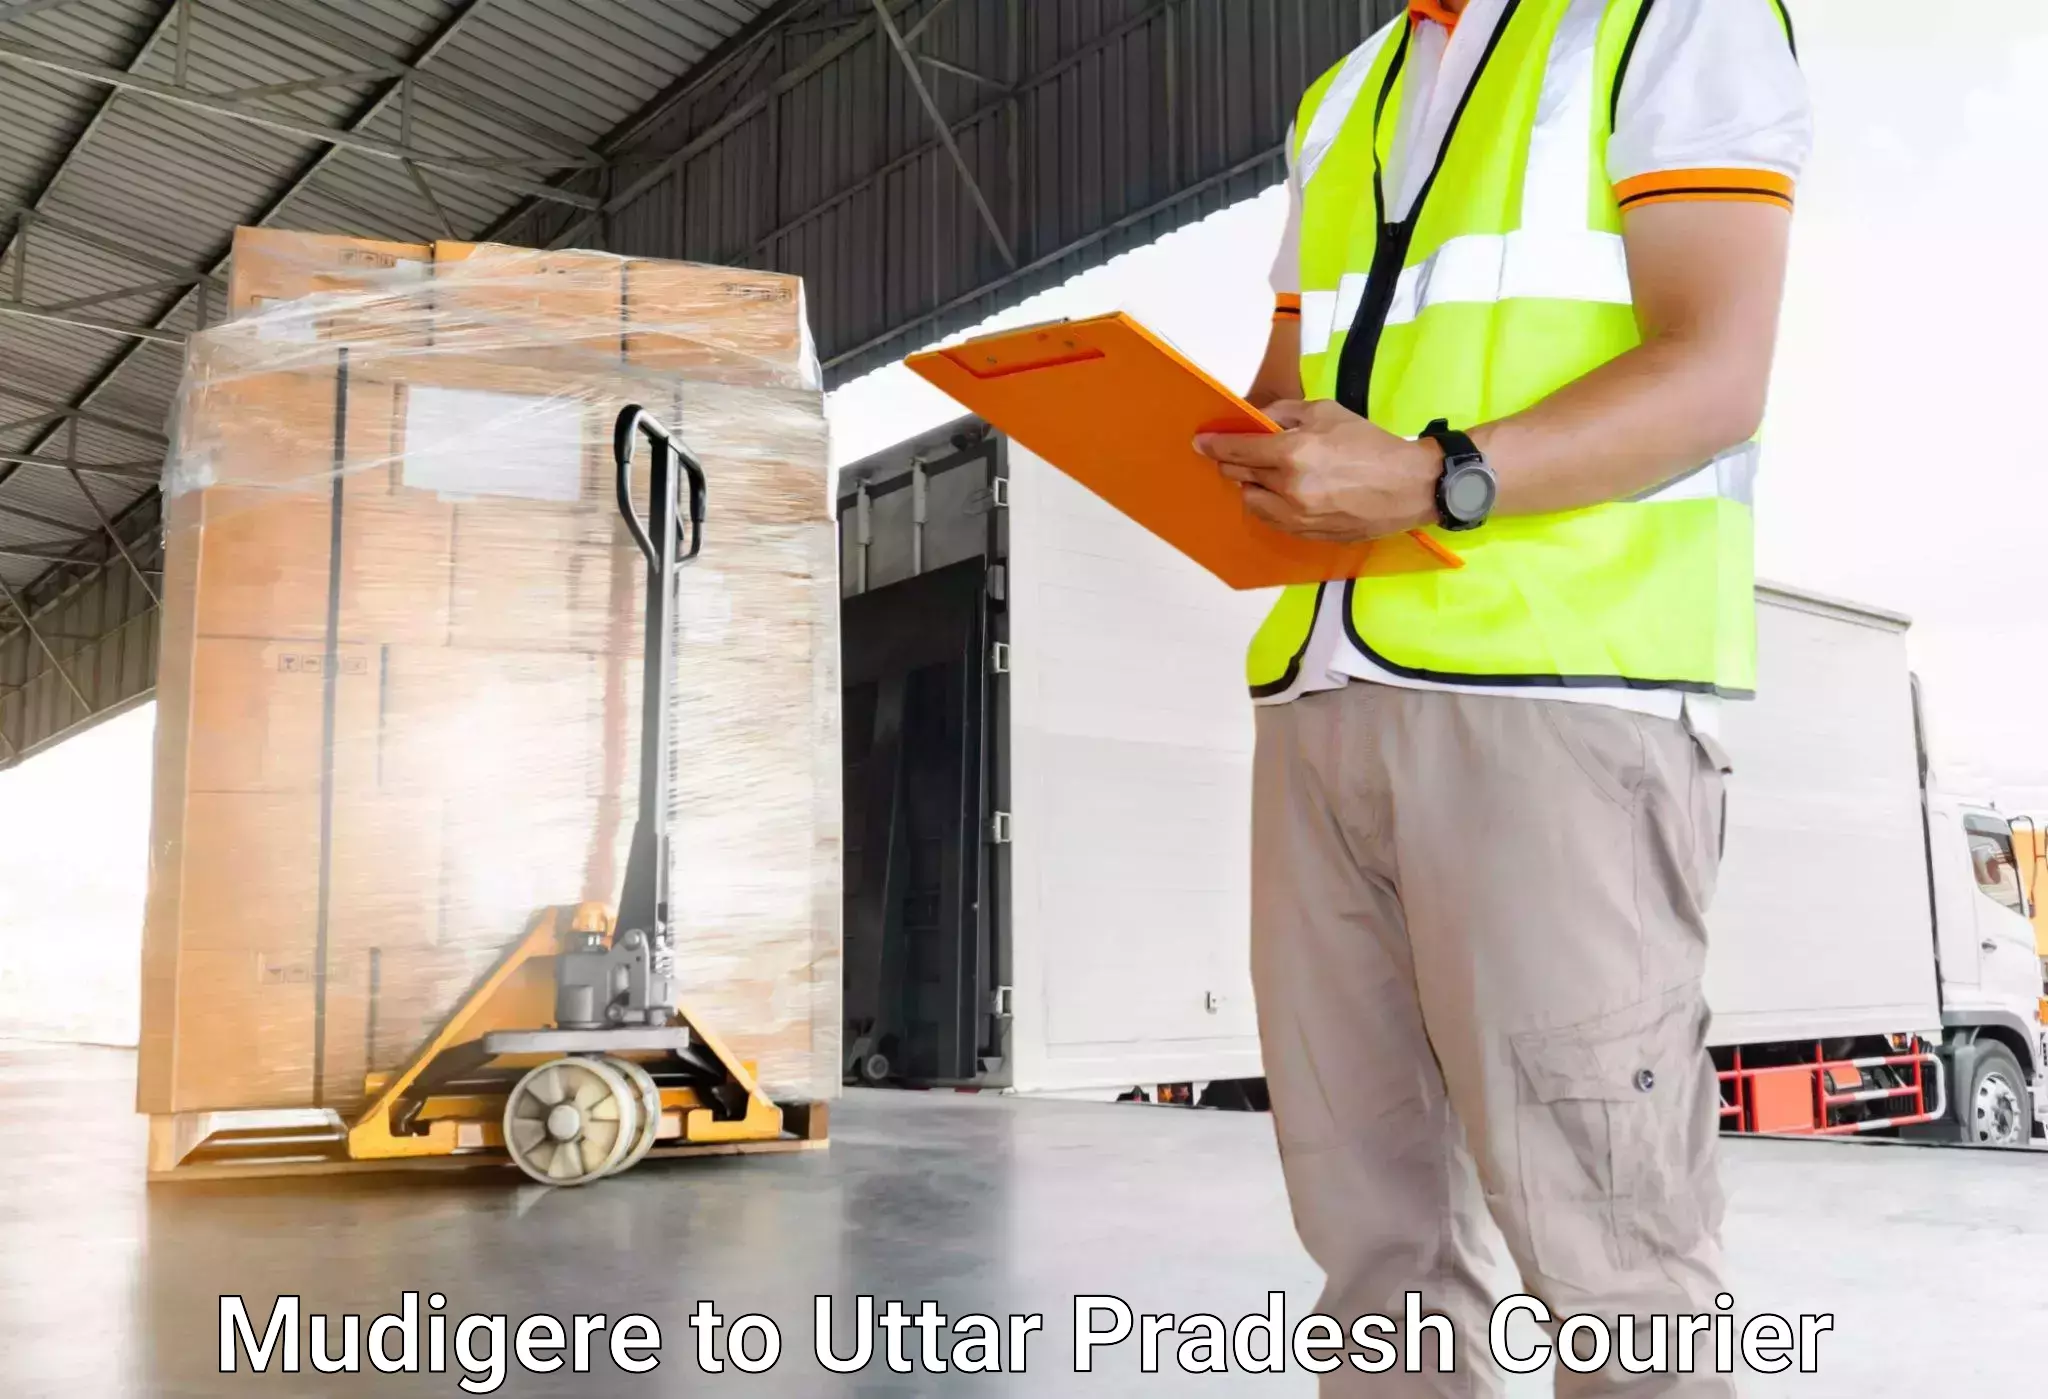 Luggage dispatch service Mudigere to Dataganj